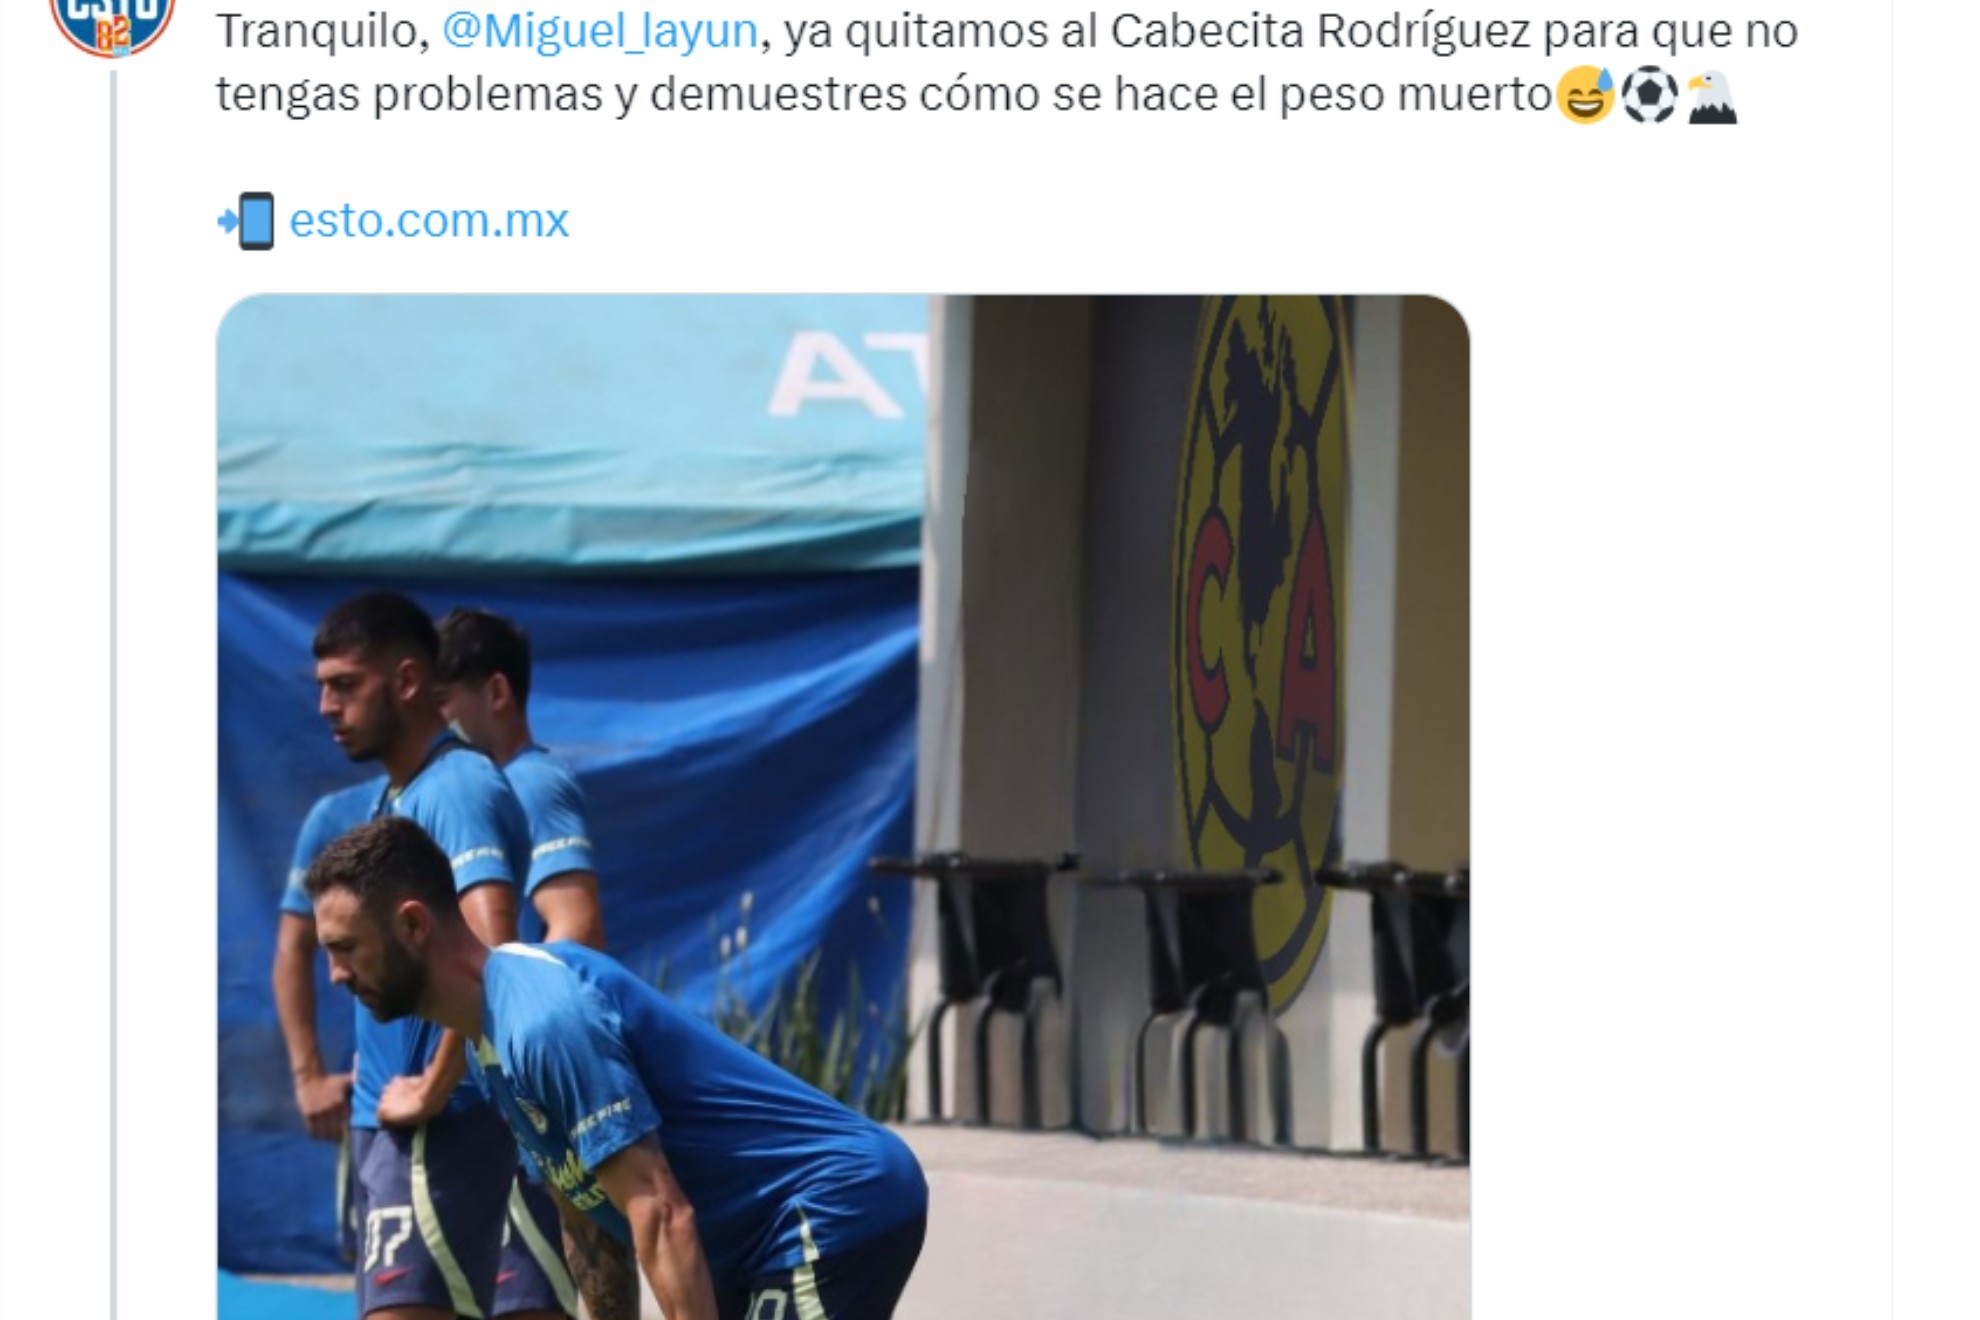 Layun pidi en sus redes sociales que retiraran al Cabecita de la imagen donde el uruguayo est haciendo su diablura. Las respuestas no se hicieron esperar